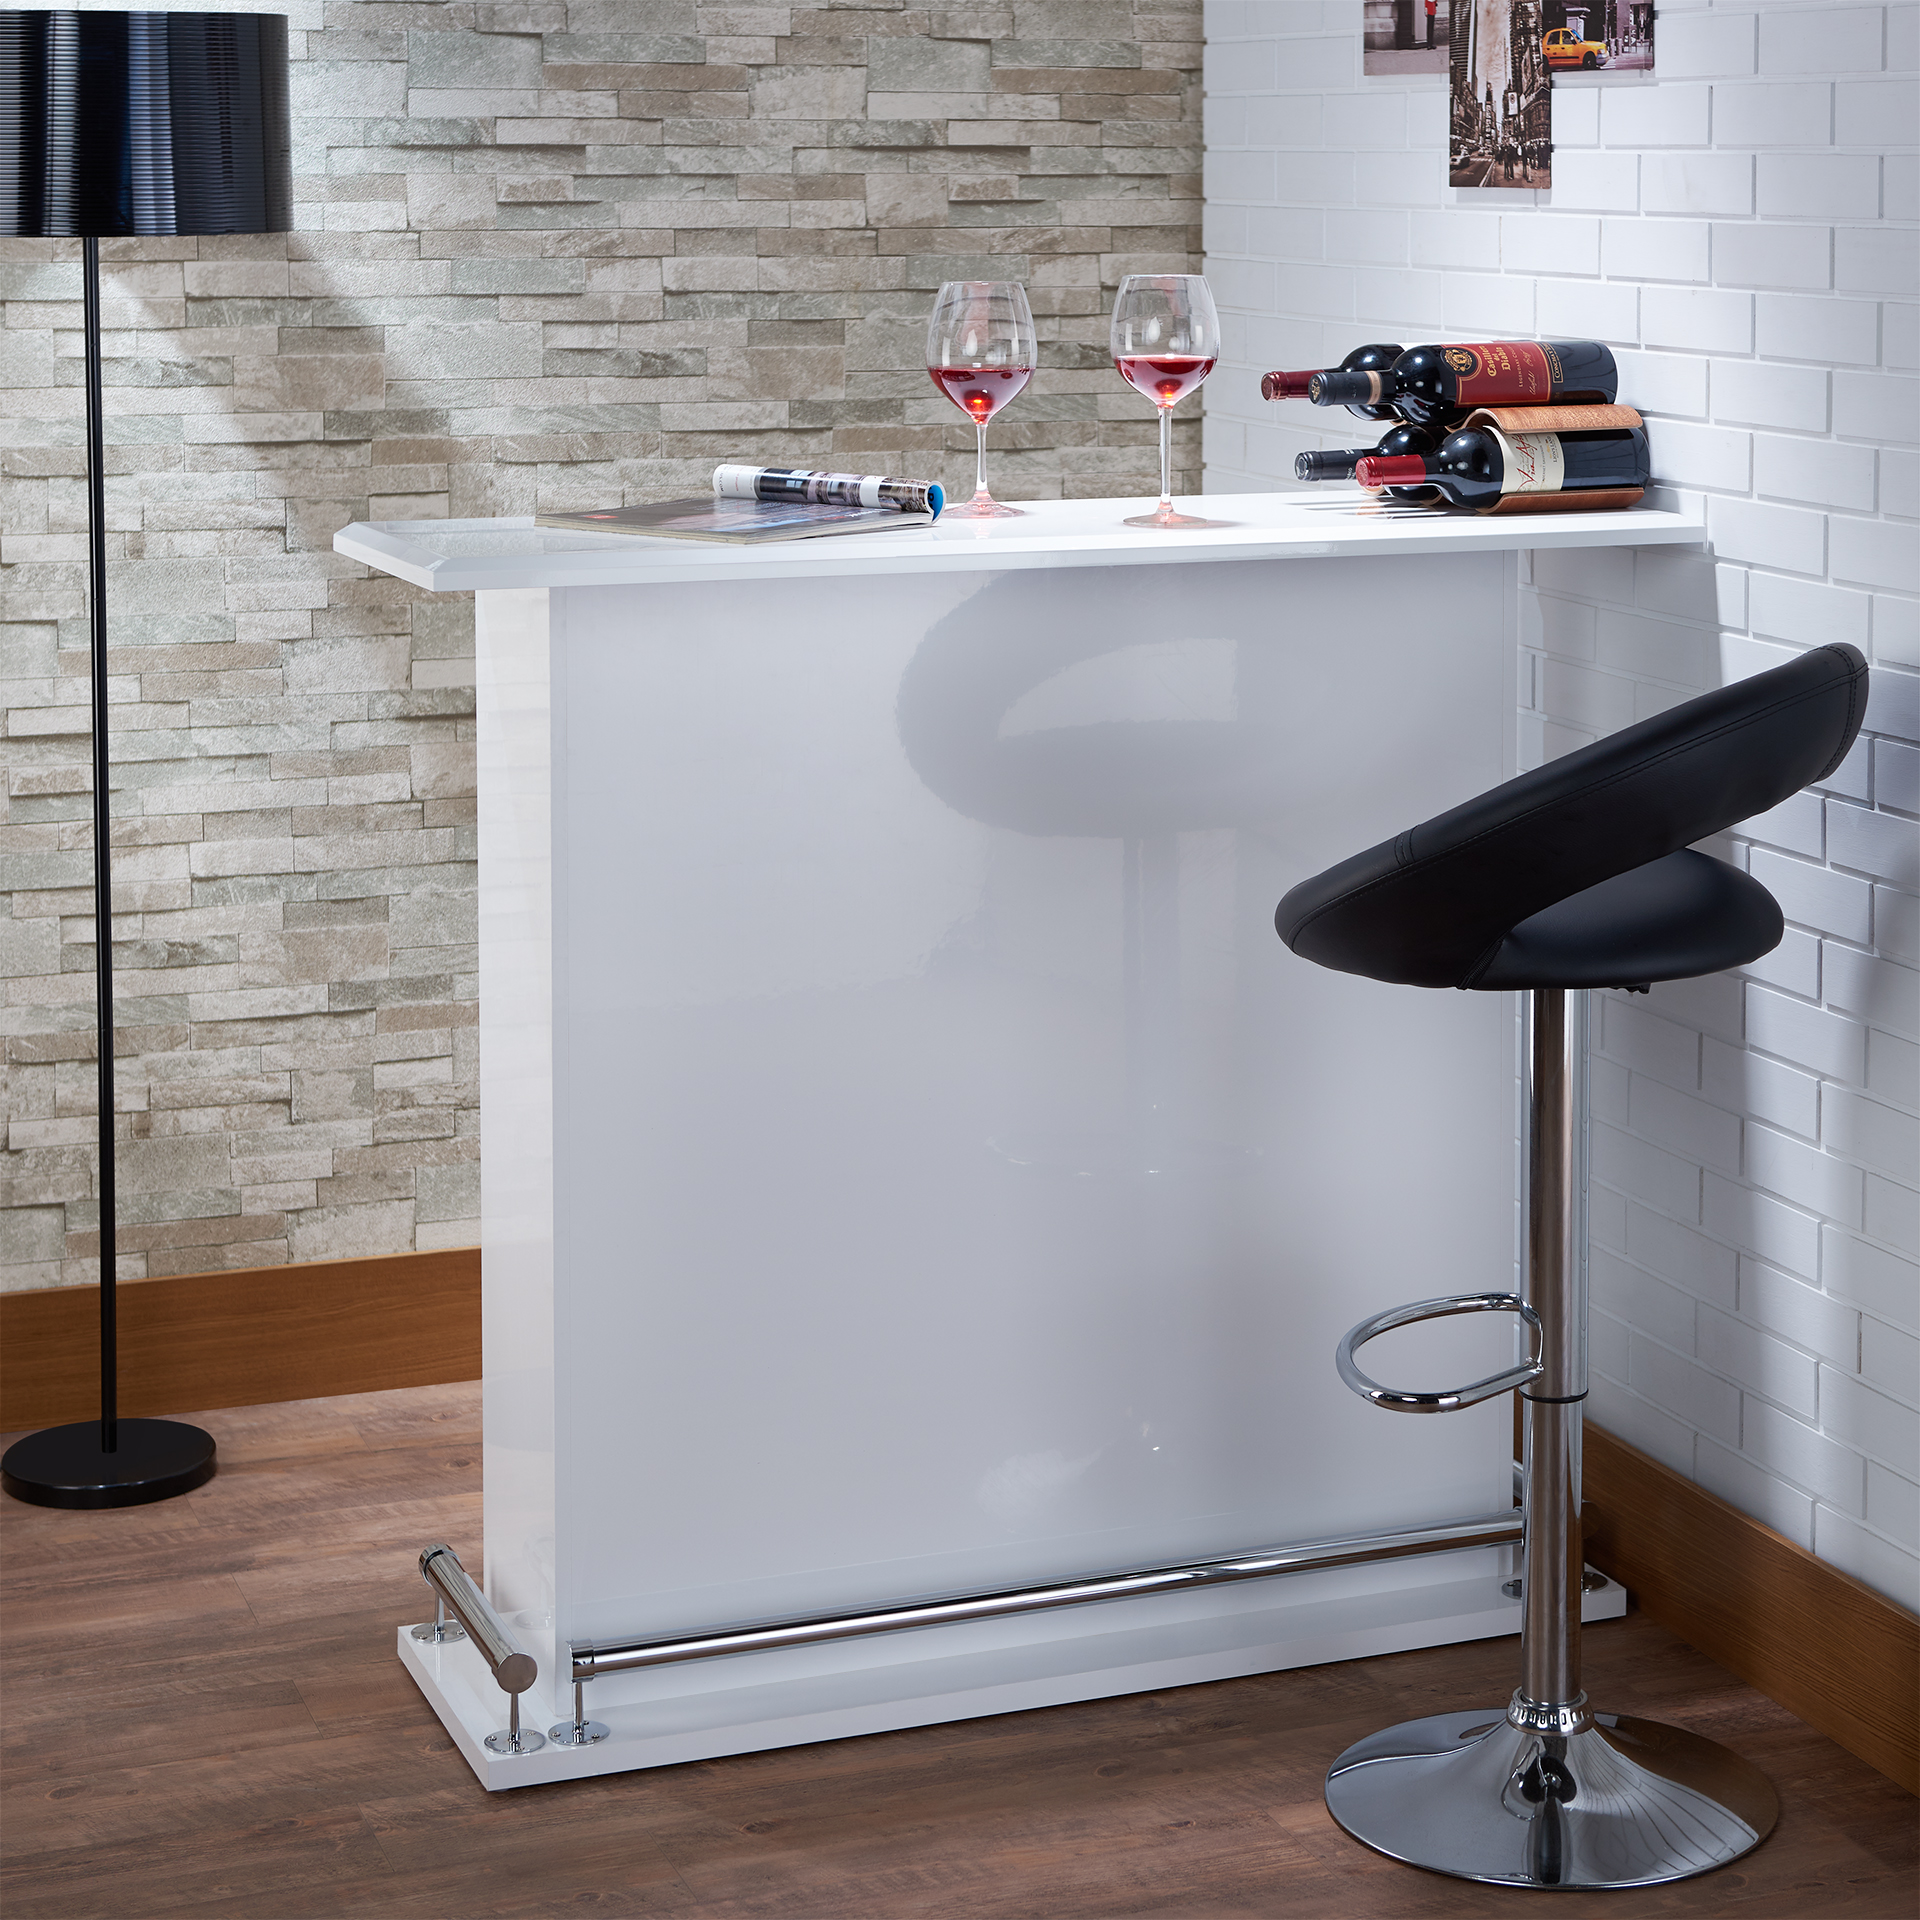 Stolička, jednoduchý sedací objekt s moderním jednoduchým designem